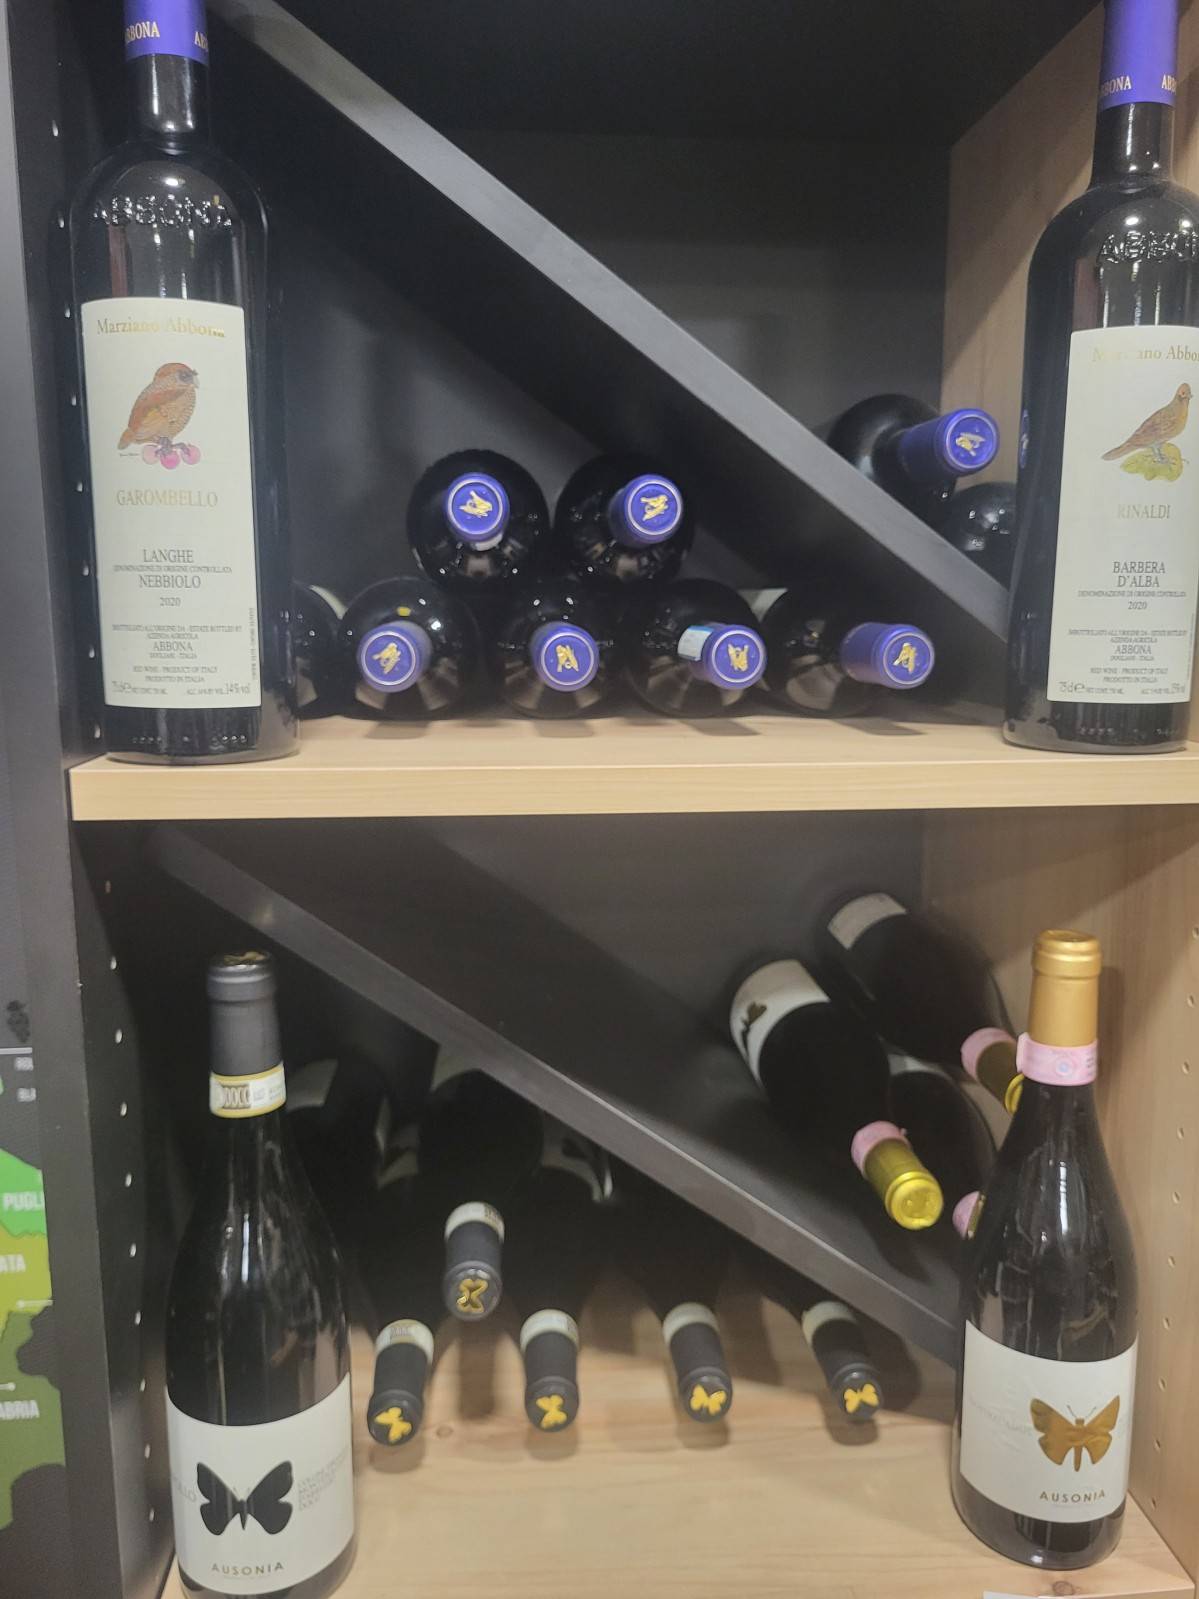 Découverte et dégustation de vins italiens: rouge, blanc et rosé chez Supermercato Giuseppe à Villefranche sur Saône près de Lyon